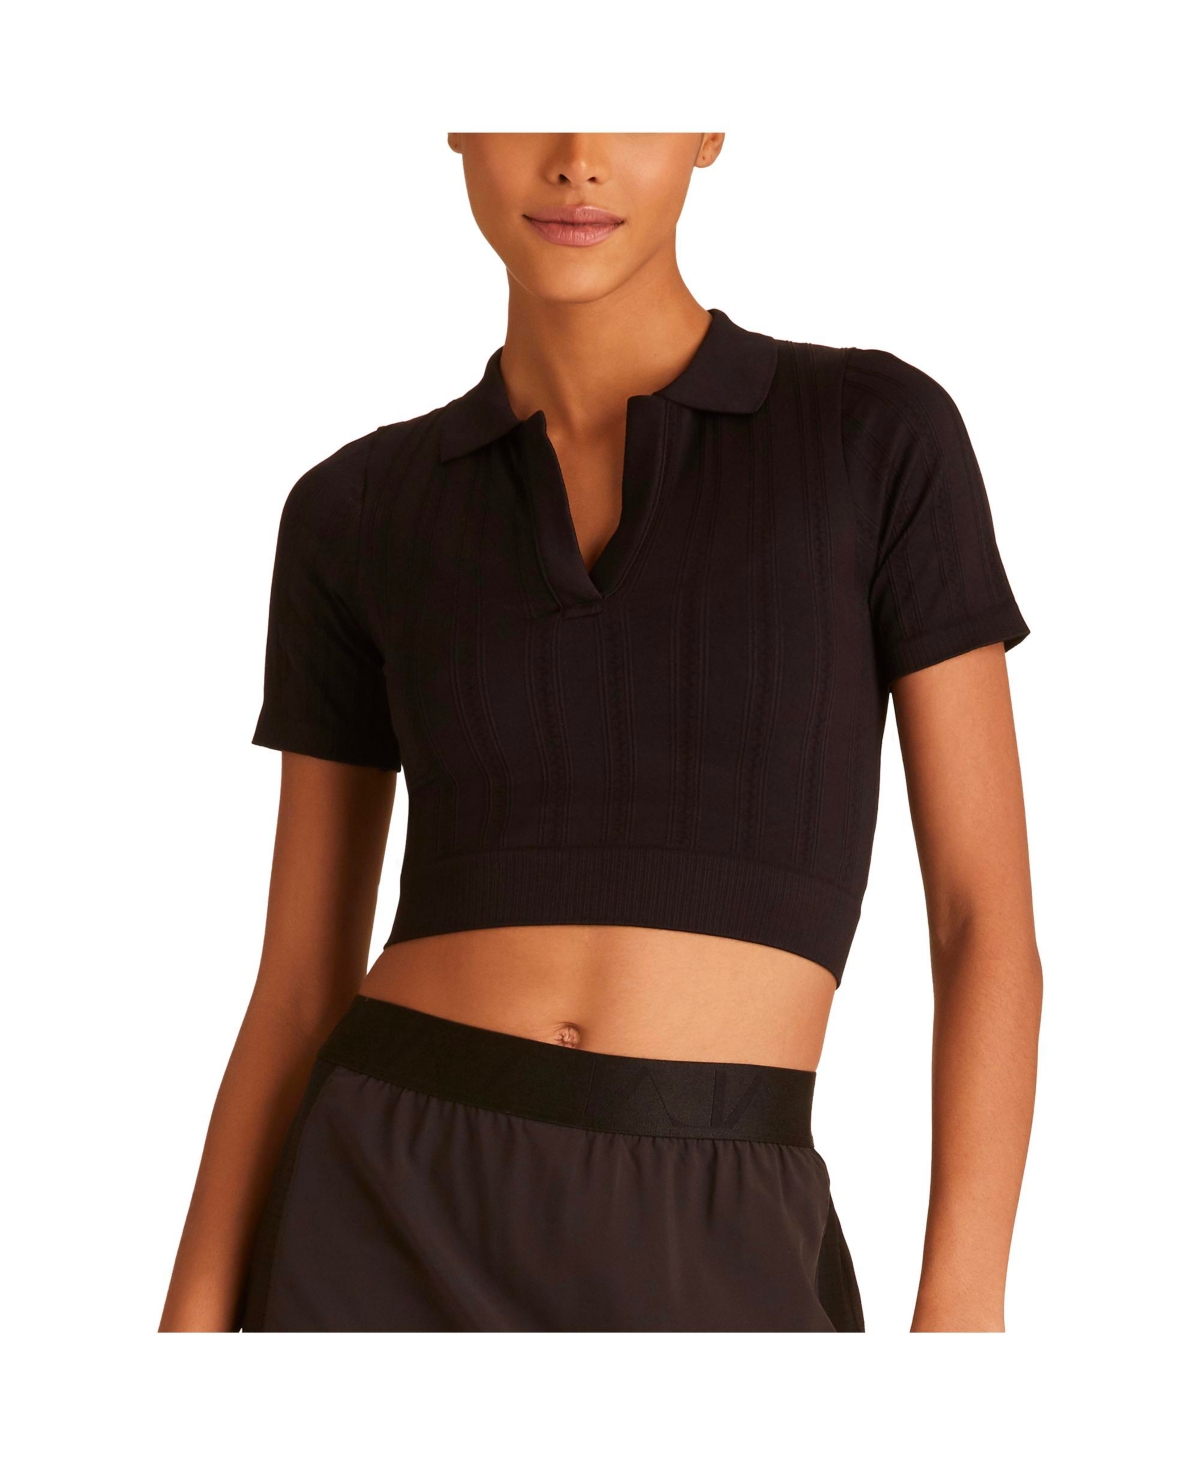  Women's Short Sleeve Seamless Polo T-Shirt